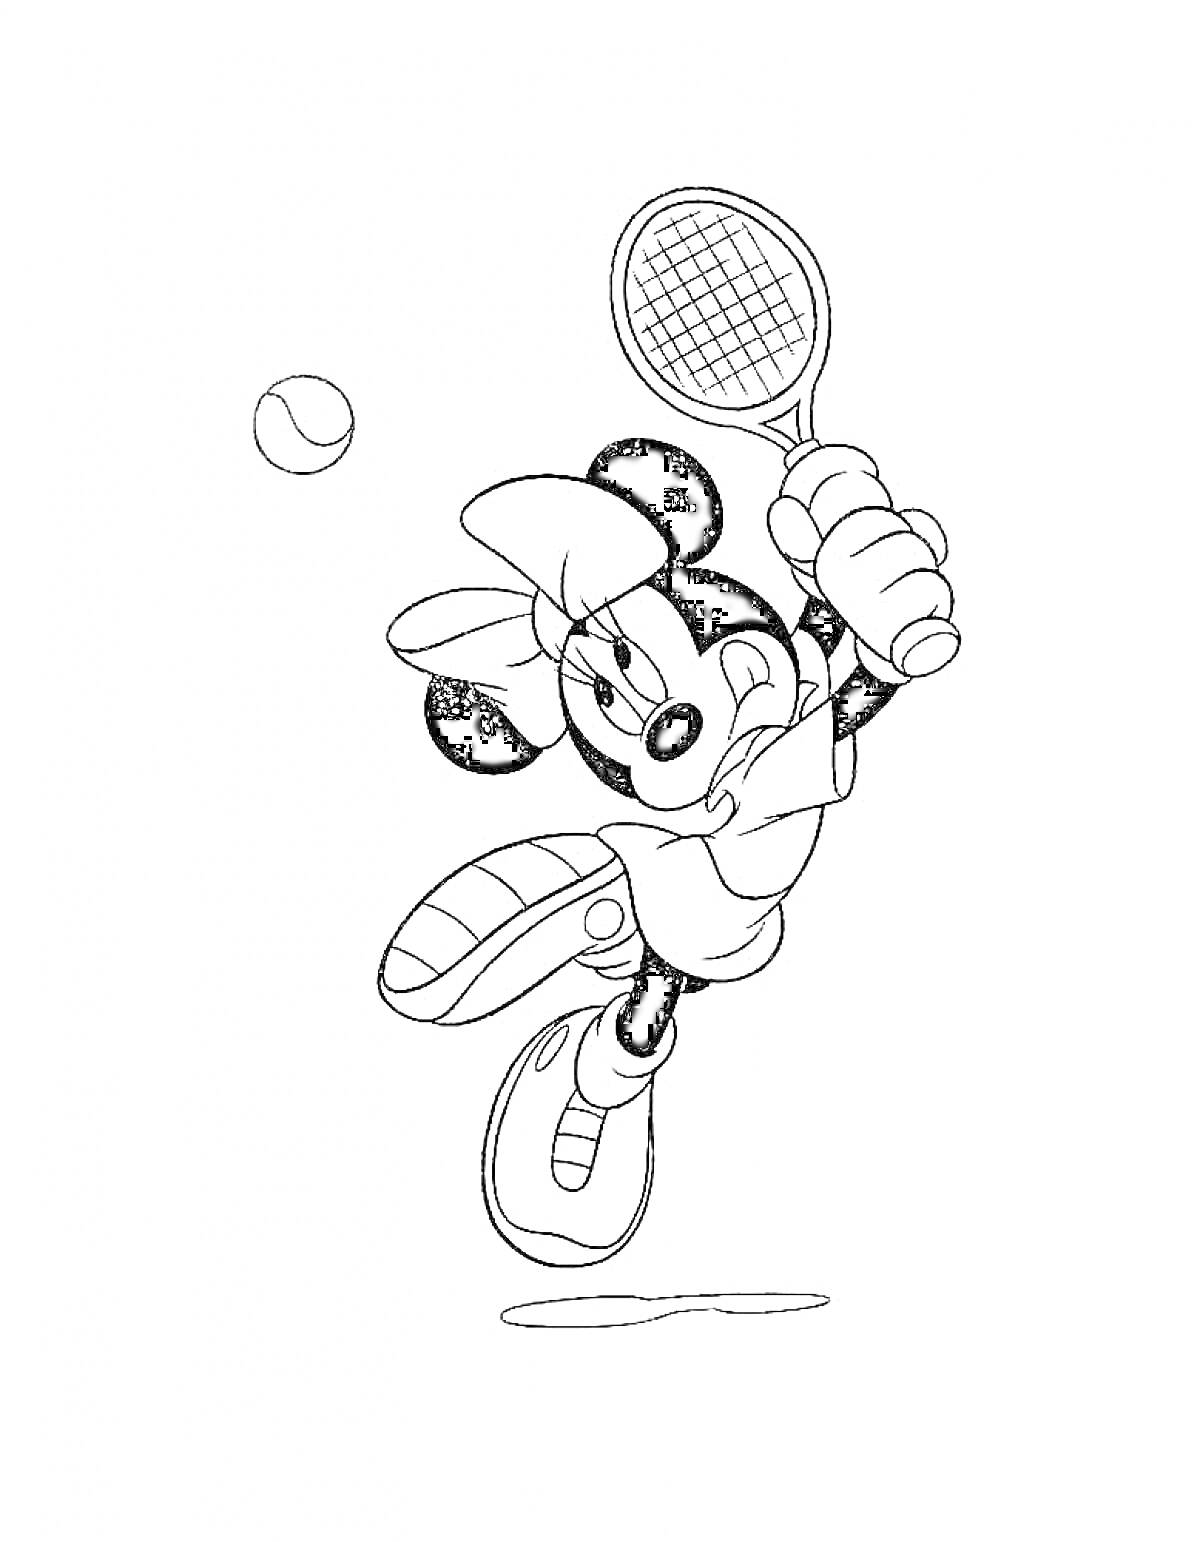 Теннисистка с ракеткой в руках, отбивающая мяч